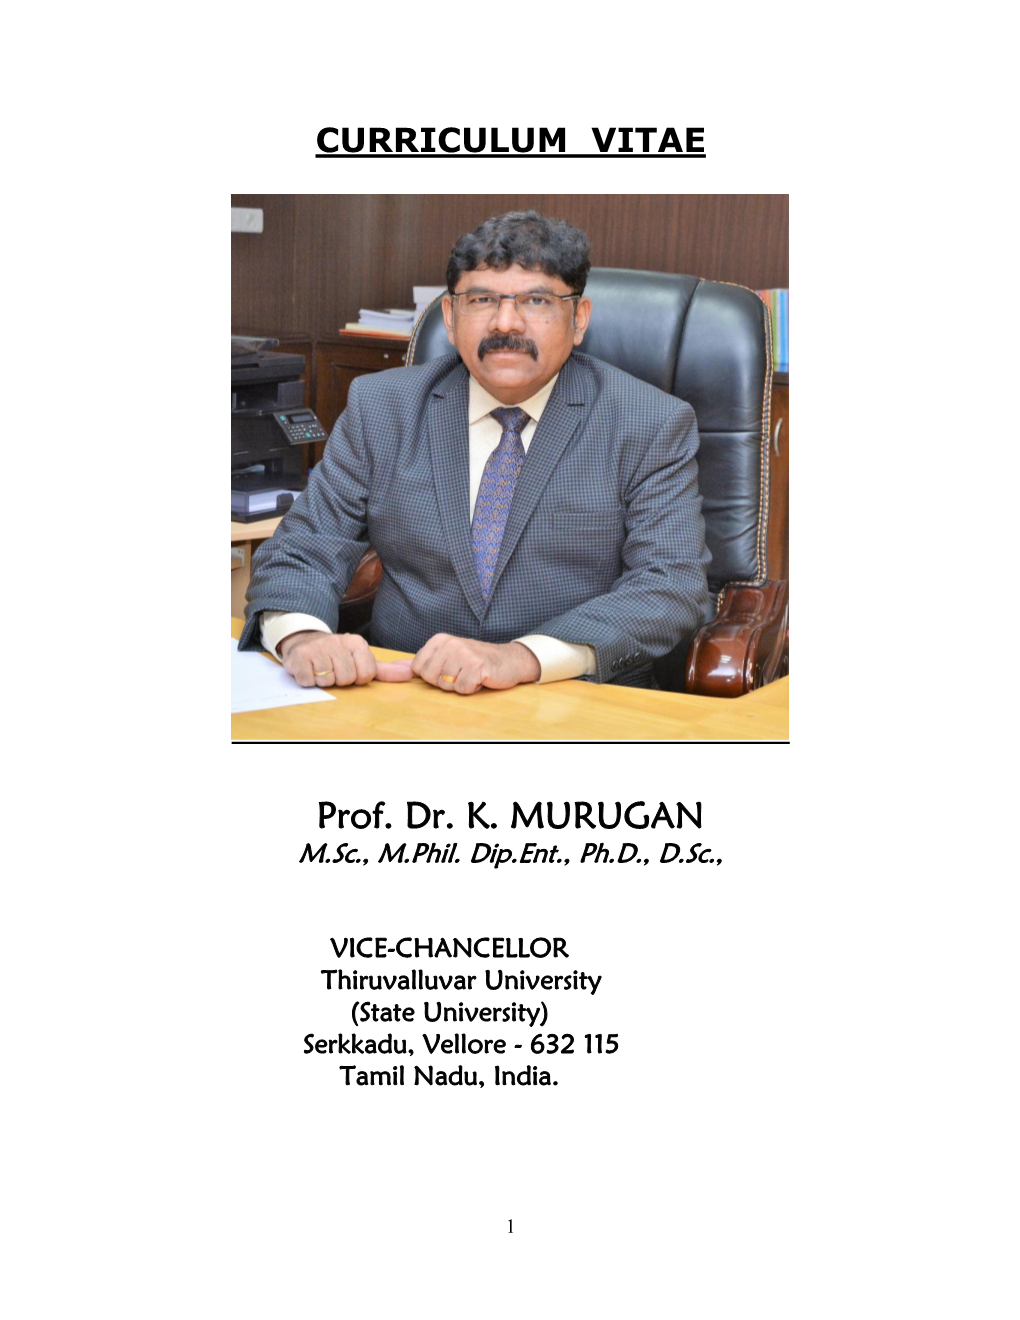 Prof. Dr. K. MURUGAN M.Sc., M.Phil